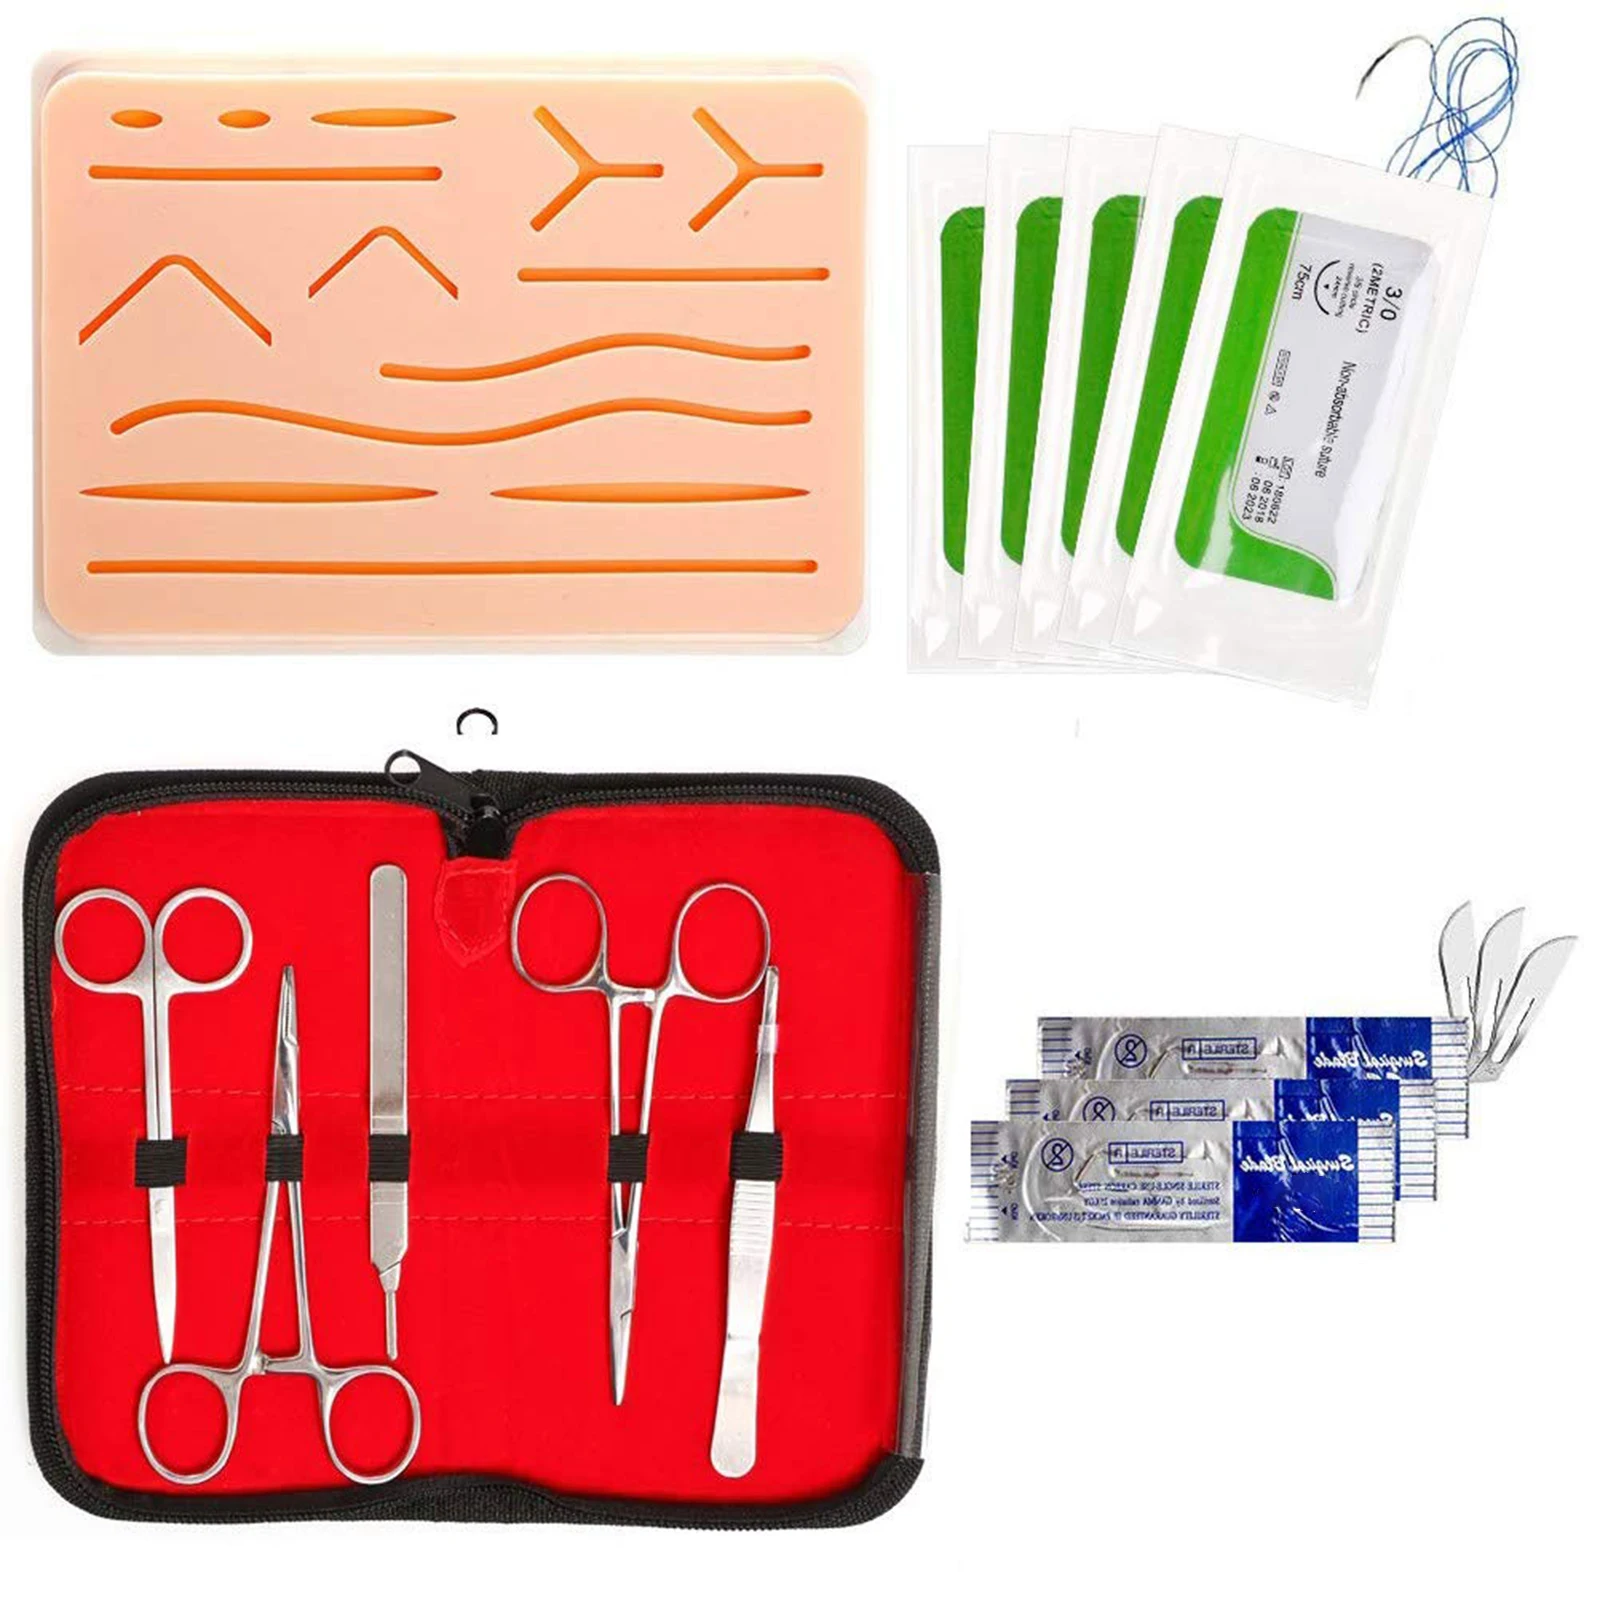 Kit de práctica de sutura para entrenamiento de sutura, almohadilla de  práctica de sutura y kit de herramientas, 24 hilos mixtos para sutura con